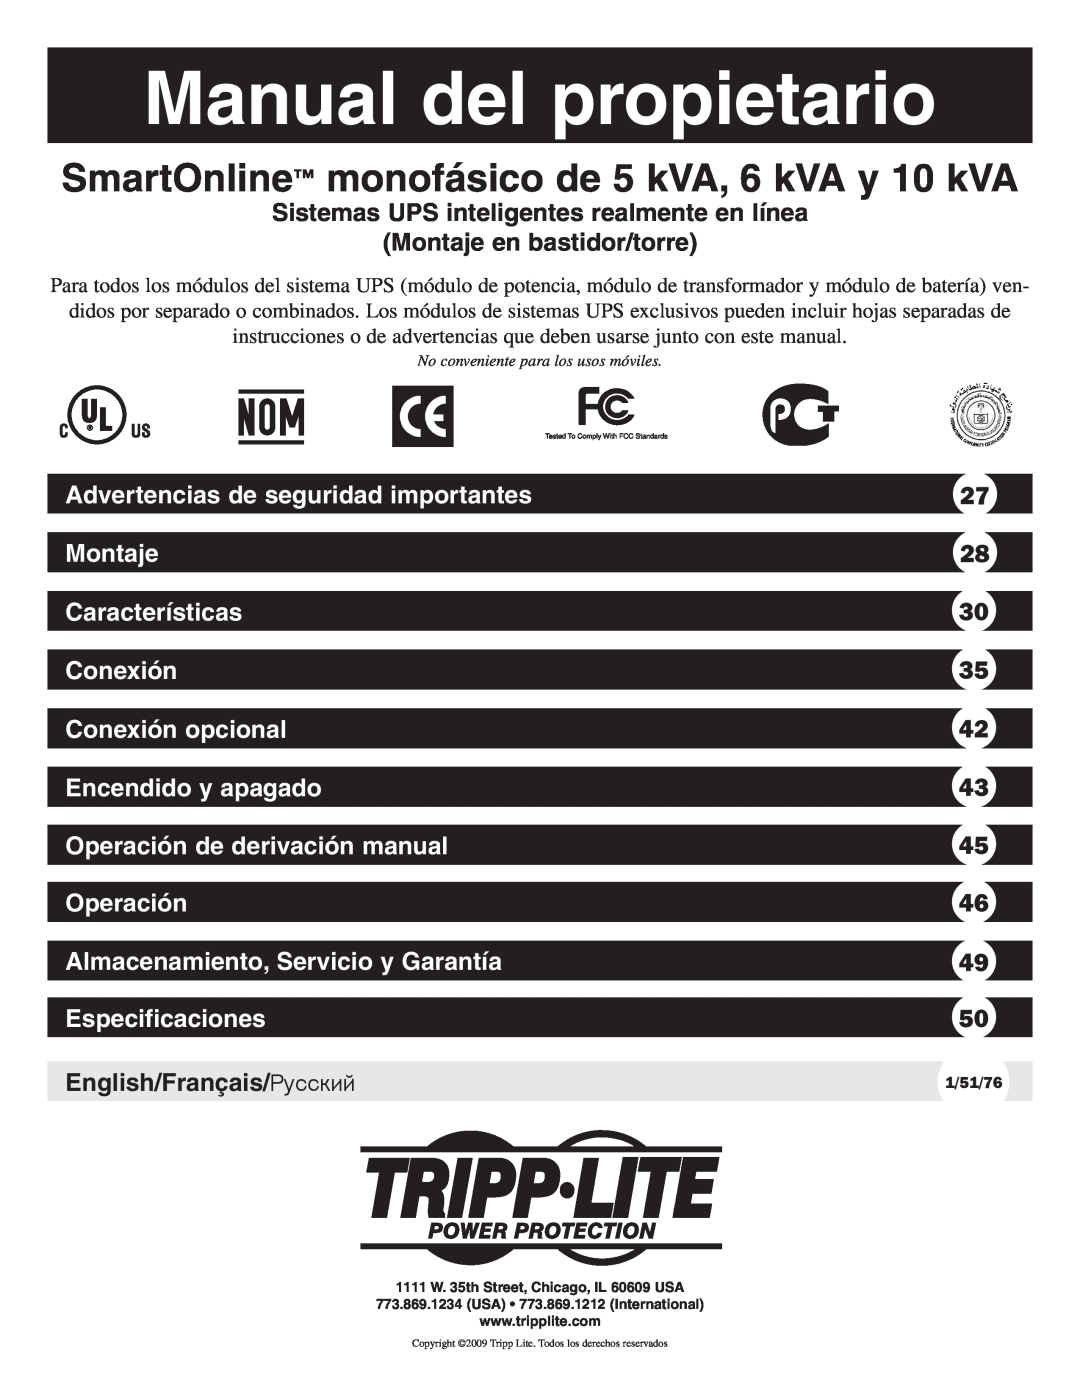 Tripp Lite 10KVA Manual del propietario, Sistemas UPS inteligentes realmente en línea, Montaje en bastidor/torre 